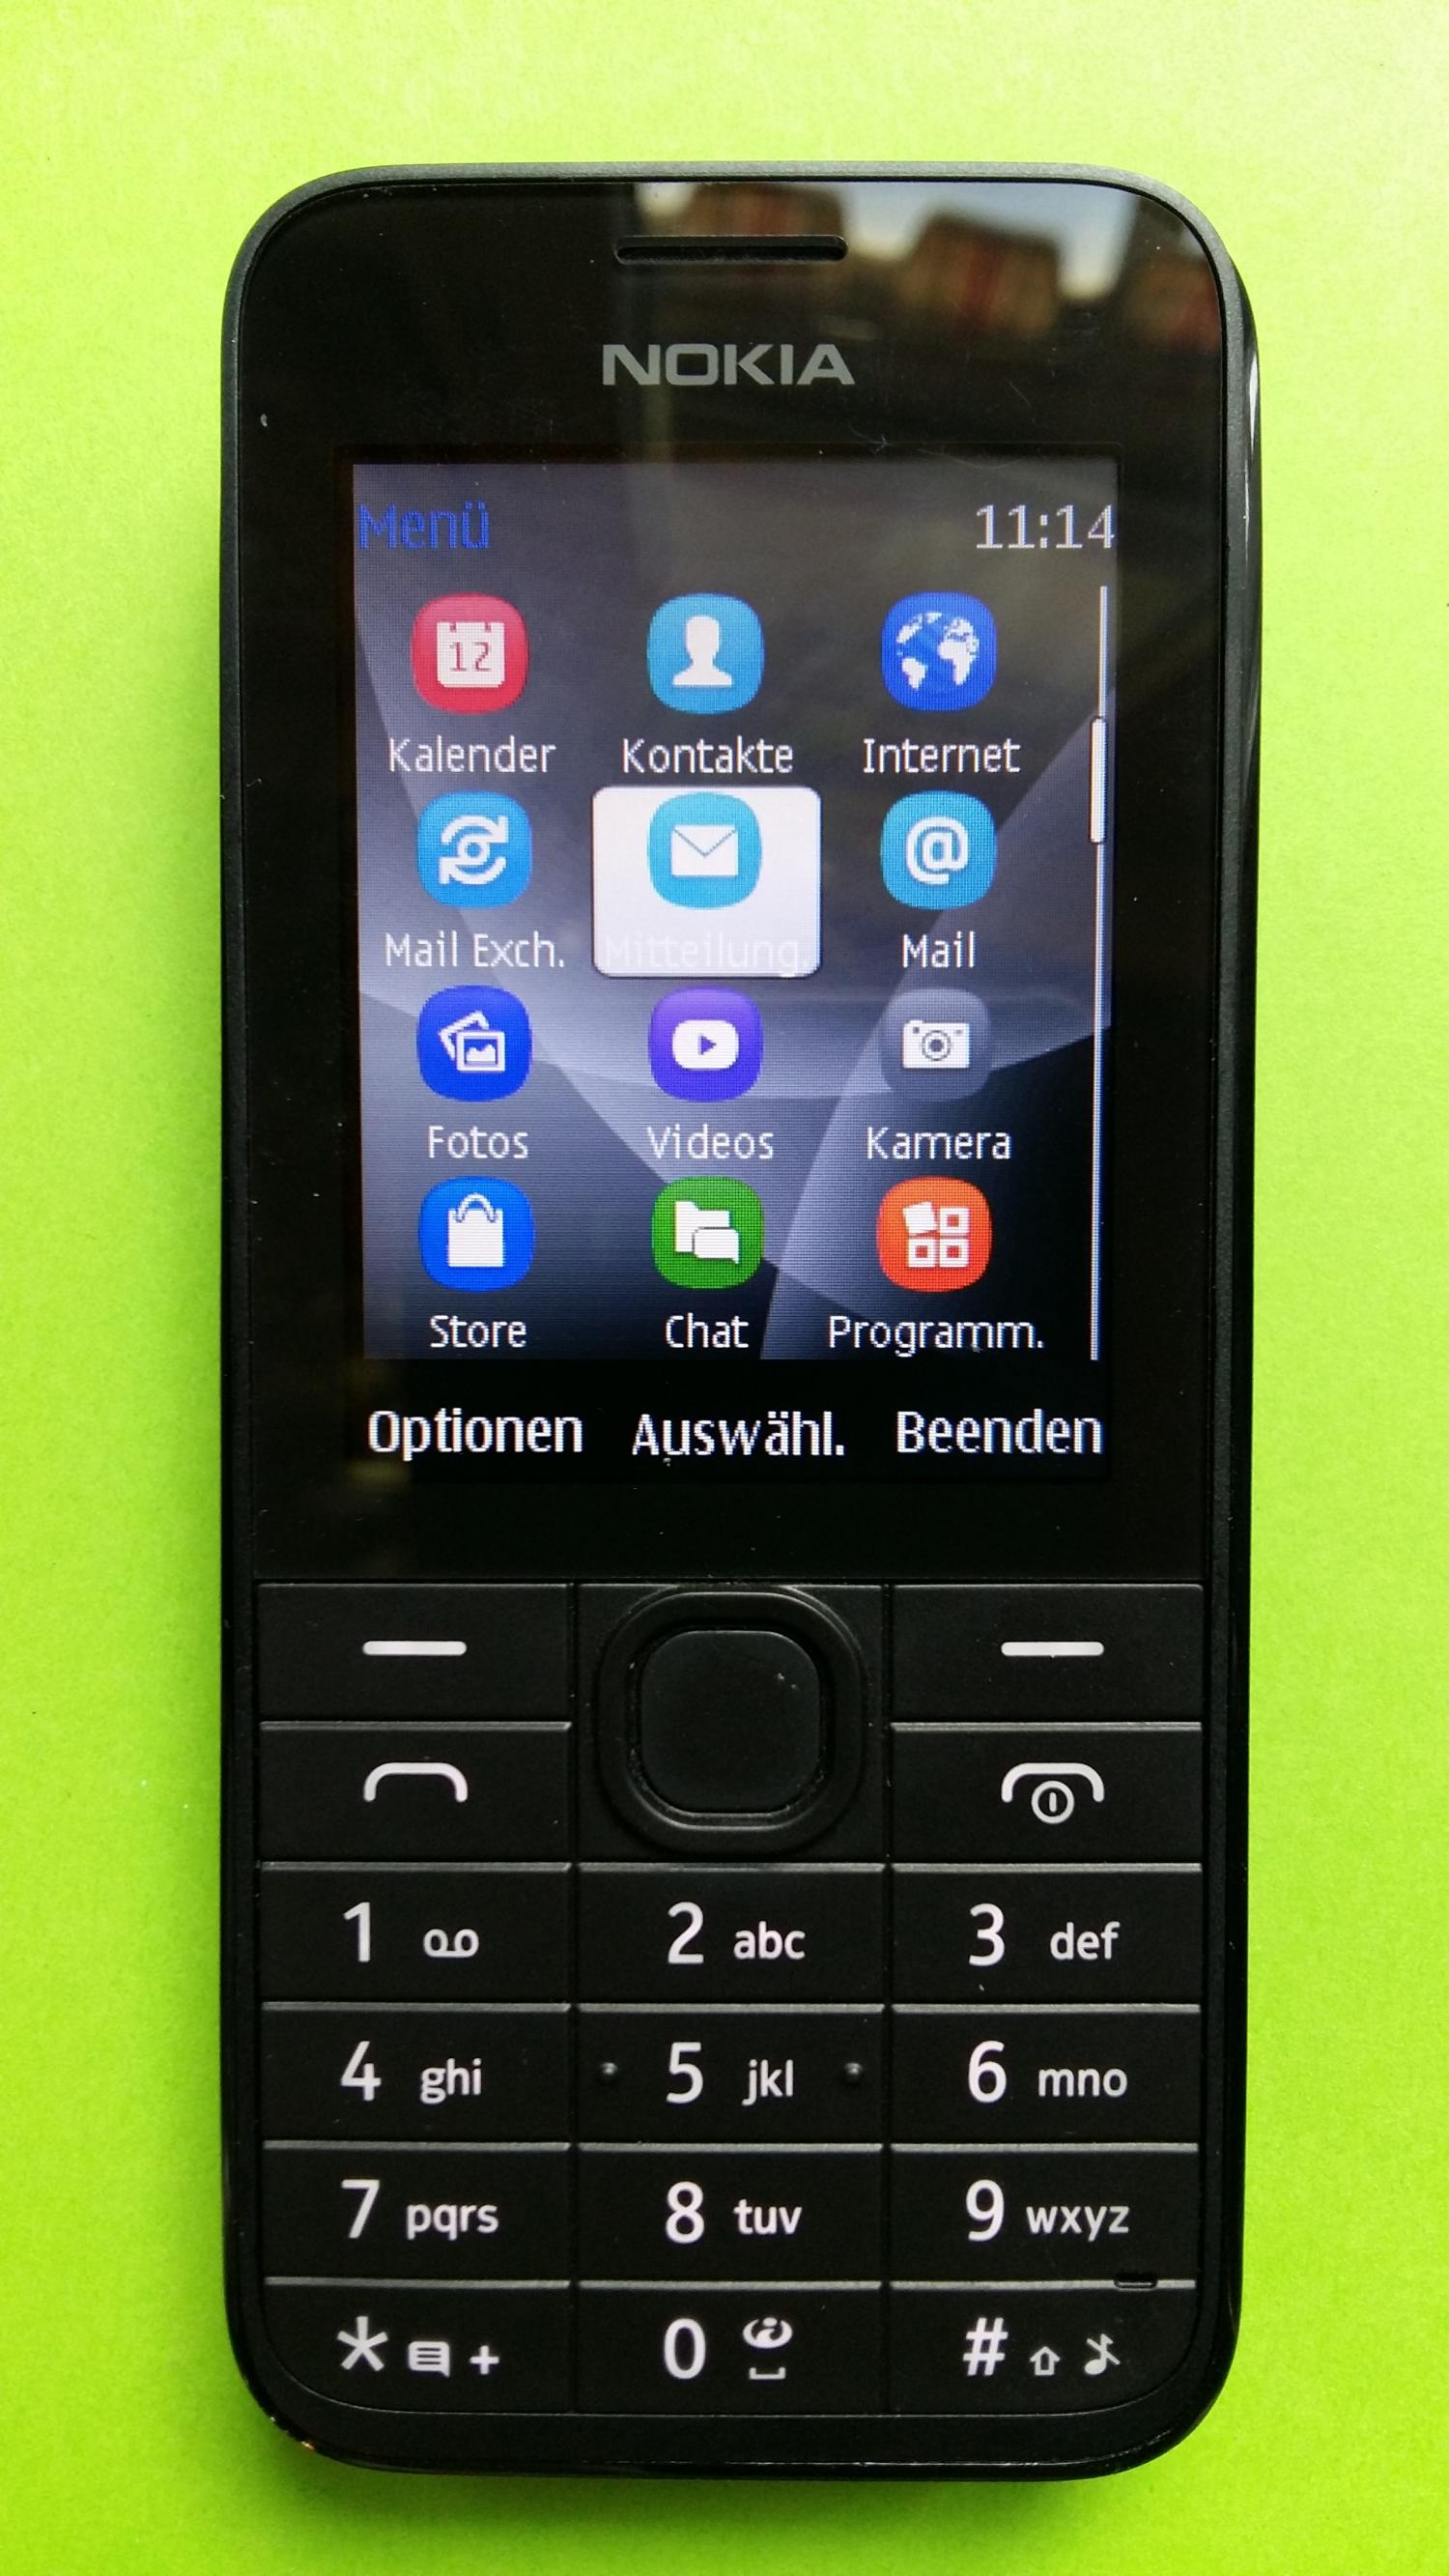 image-7300916-Nokia 208.1 (1)1.jpg